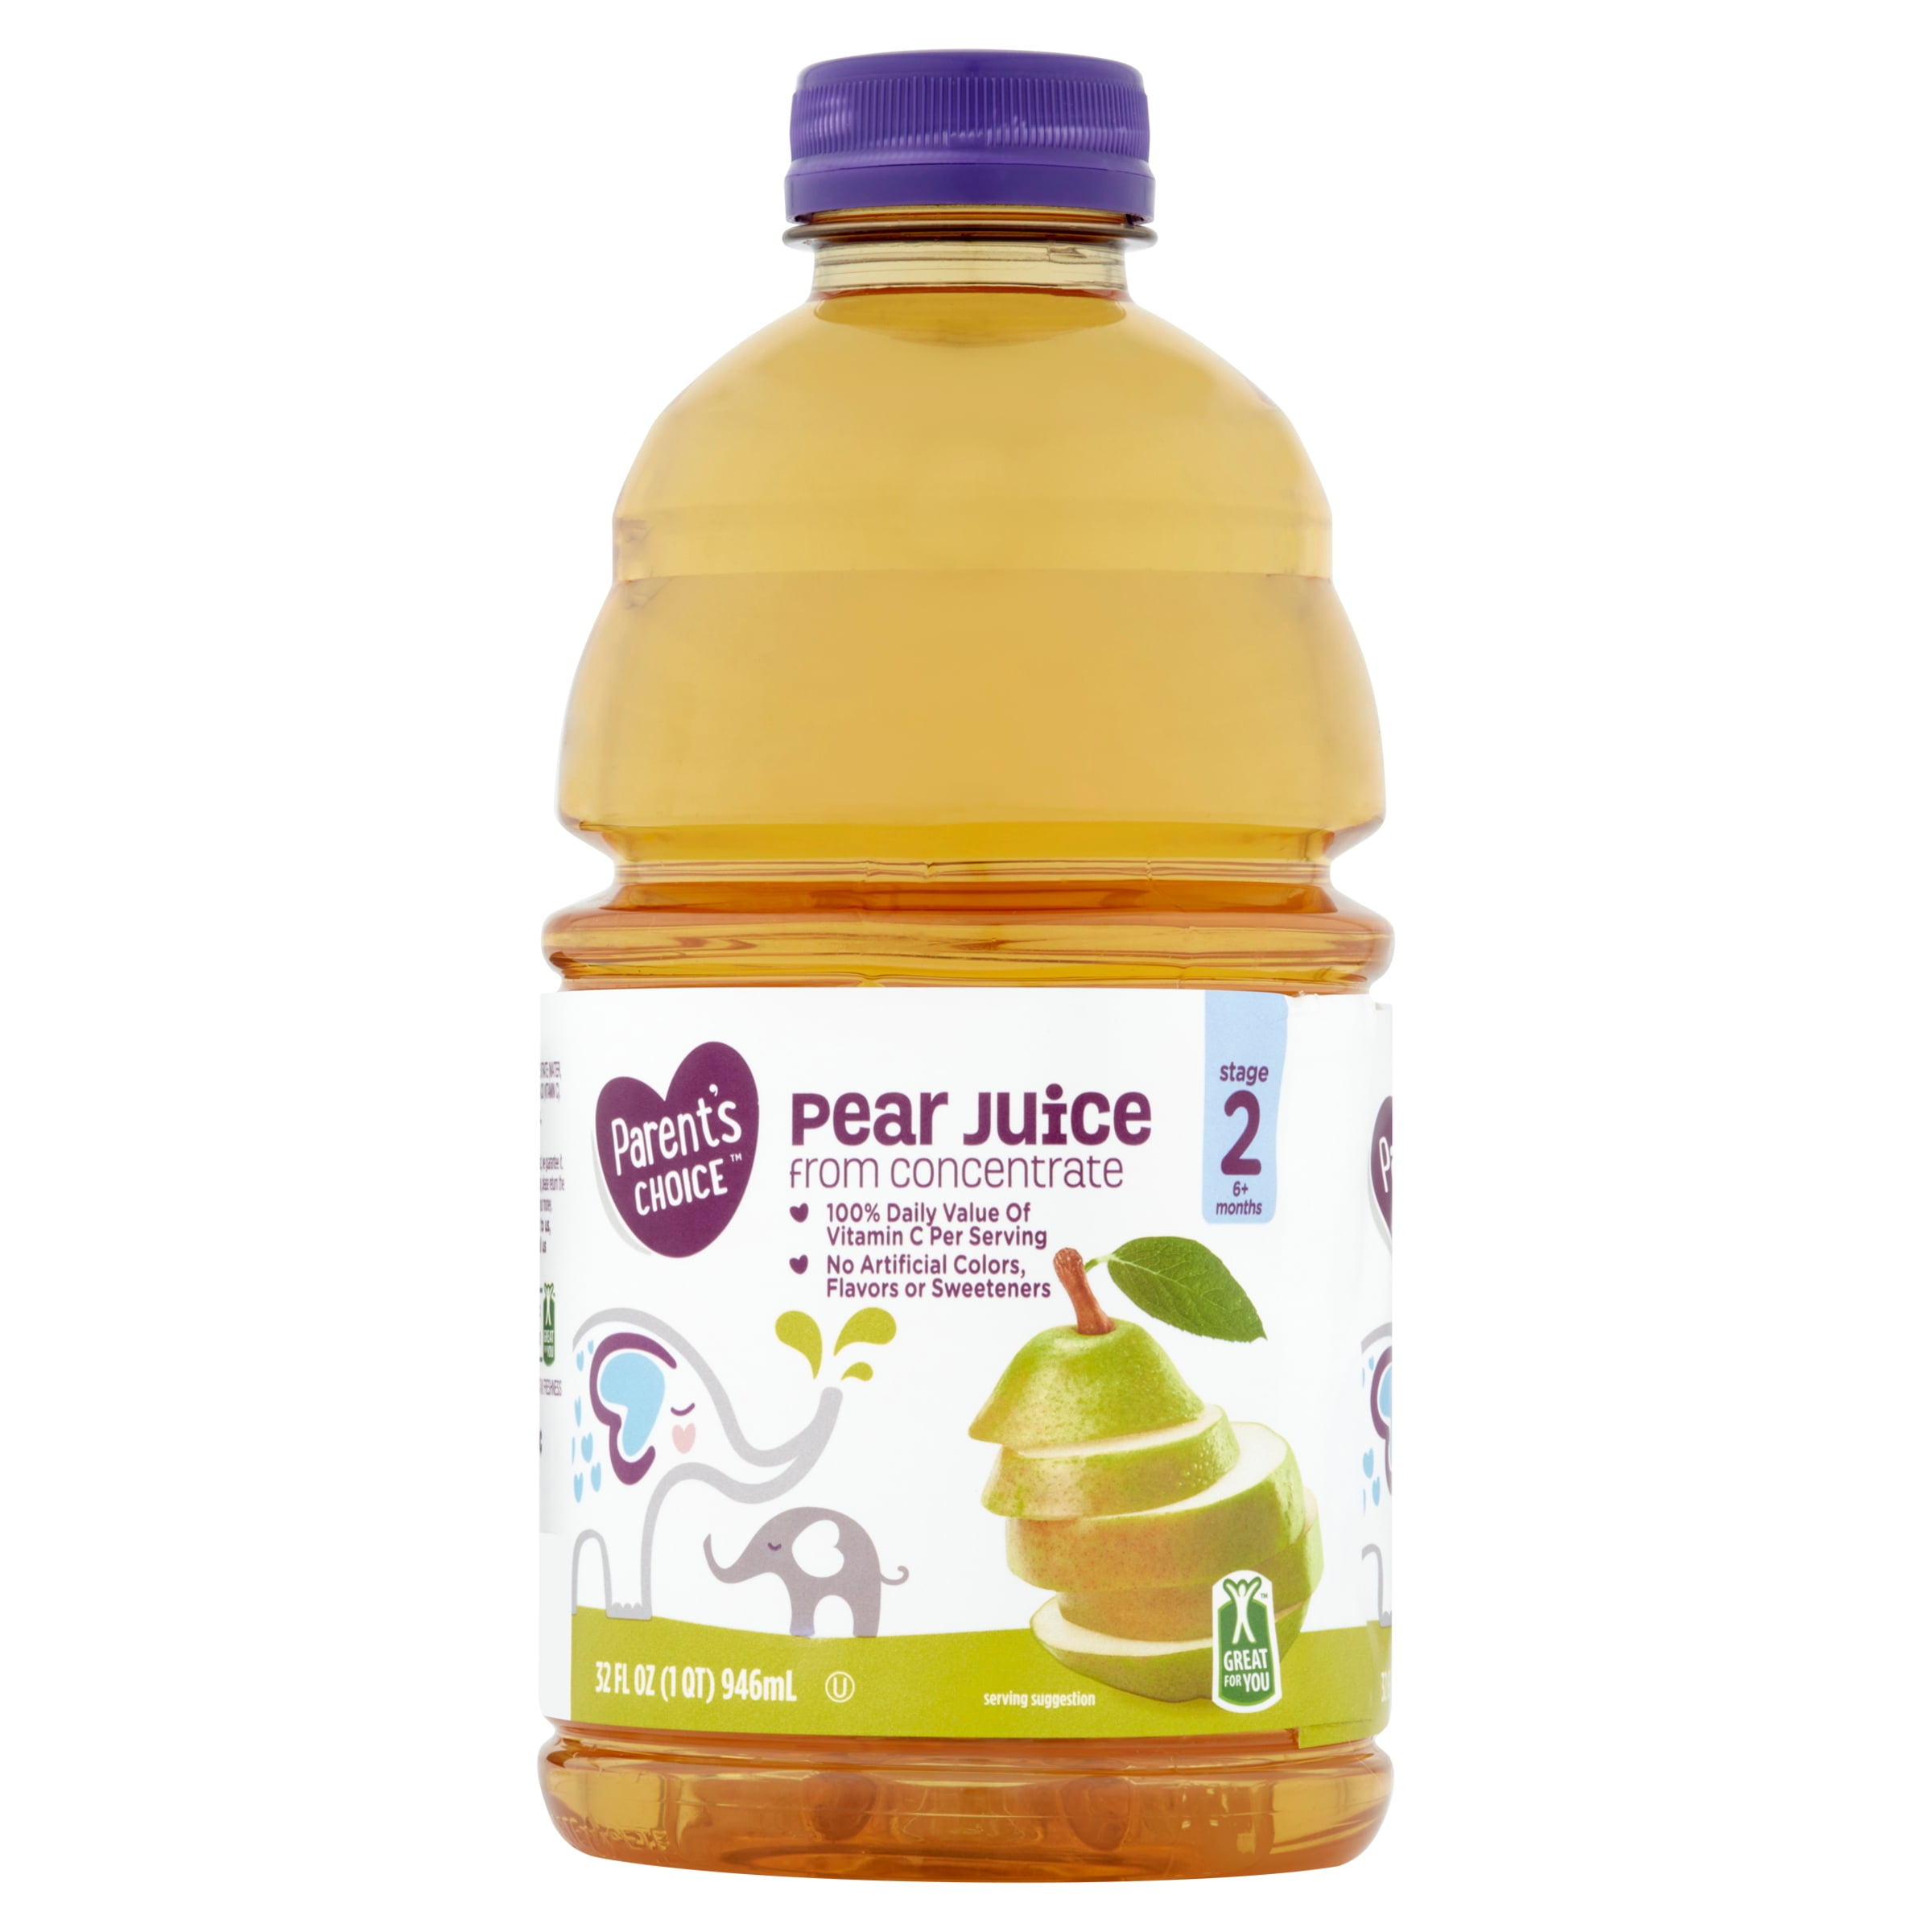 Parent's Choice Pear Juice, 32 oz Bottle